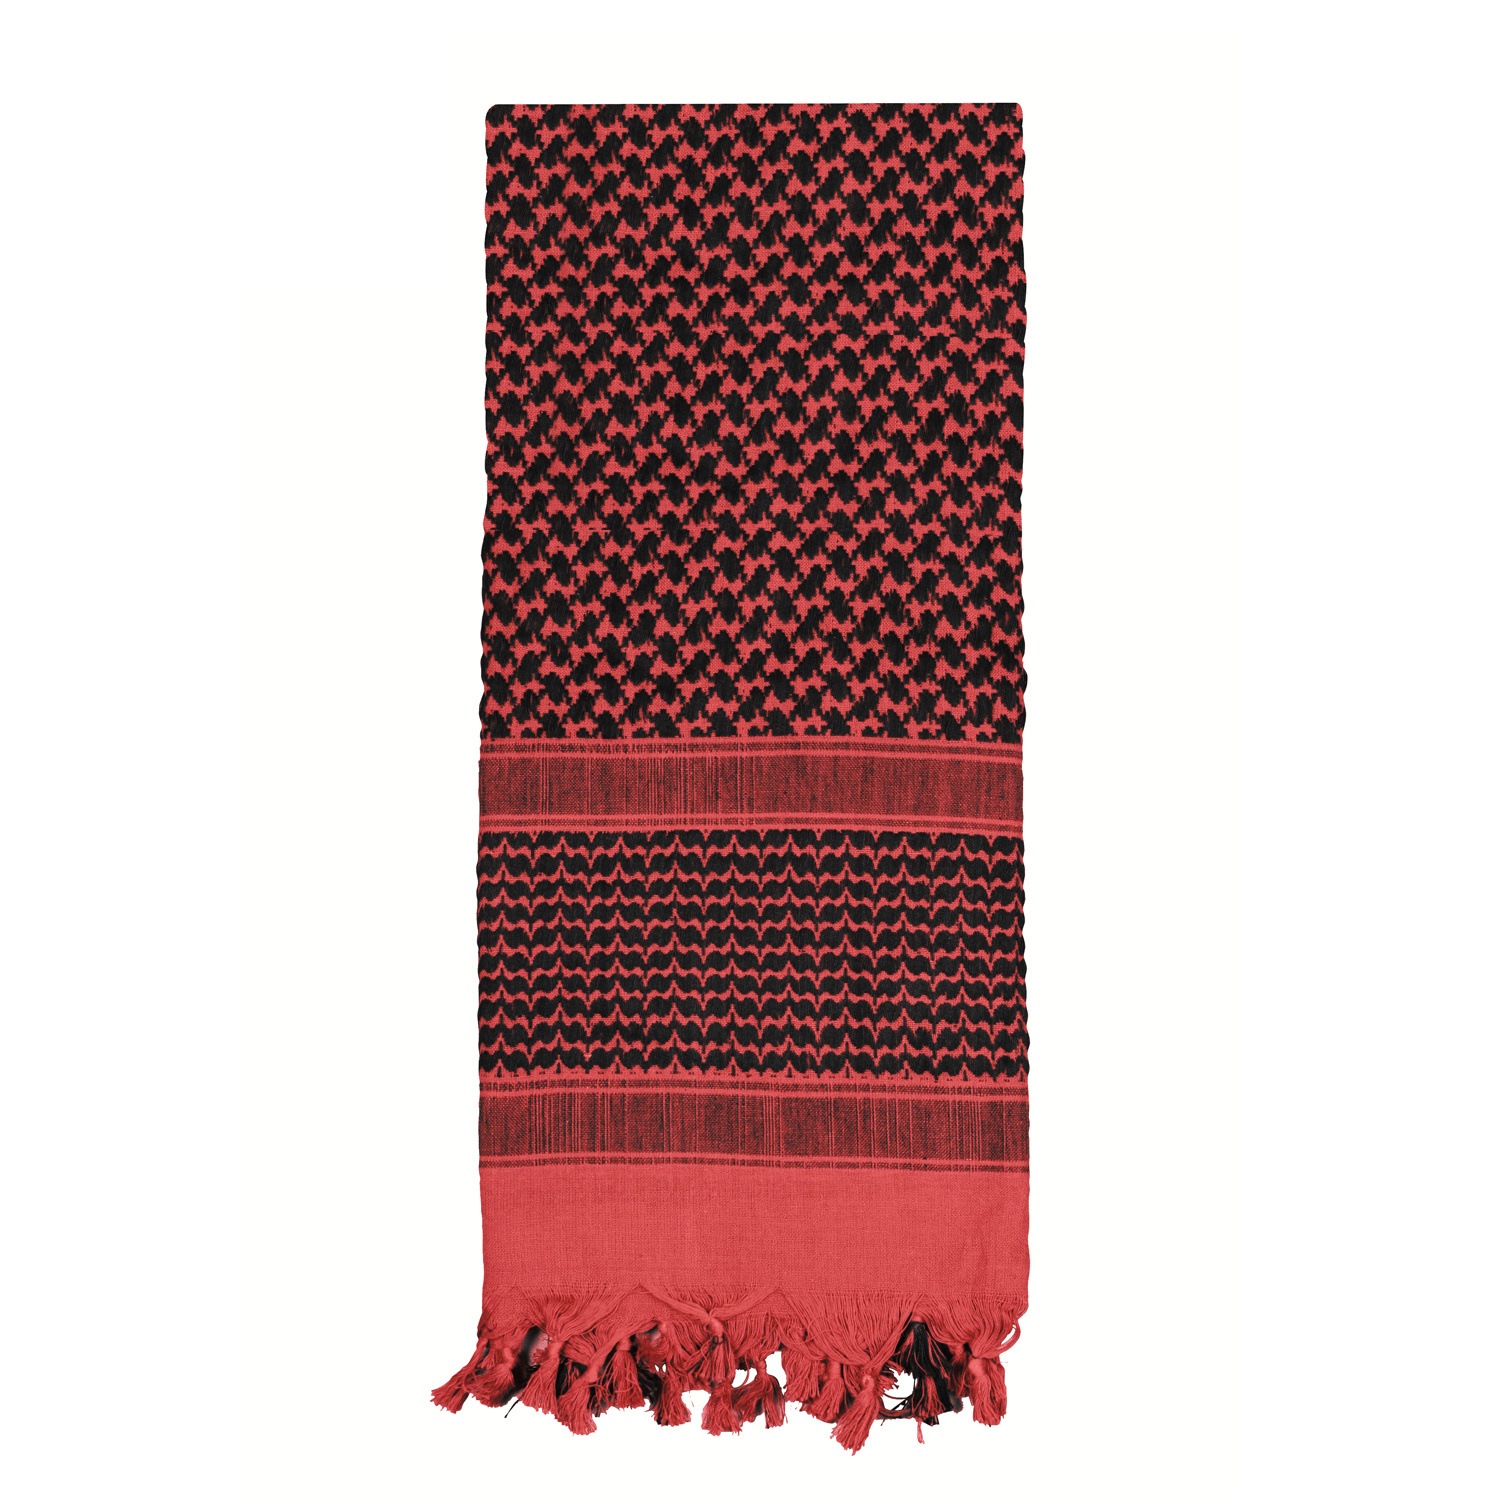 šátek Shemagh odlehčený červeno-černý